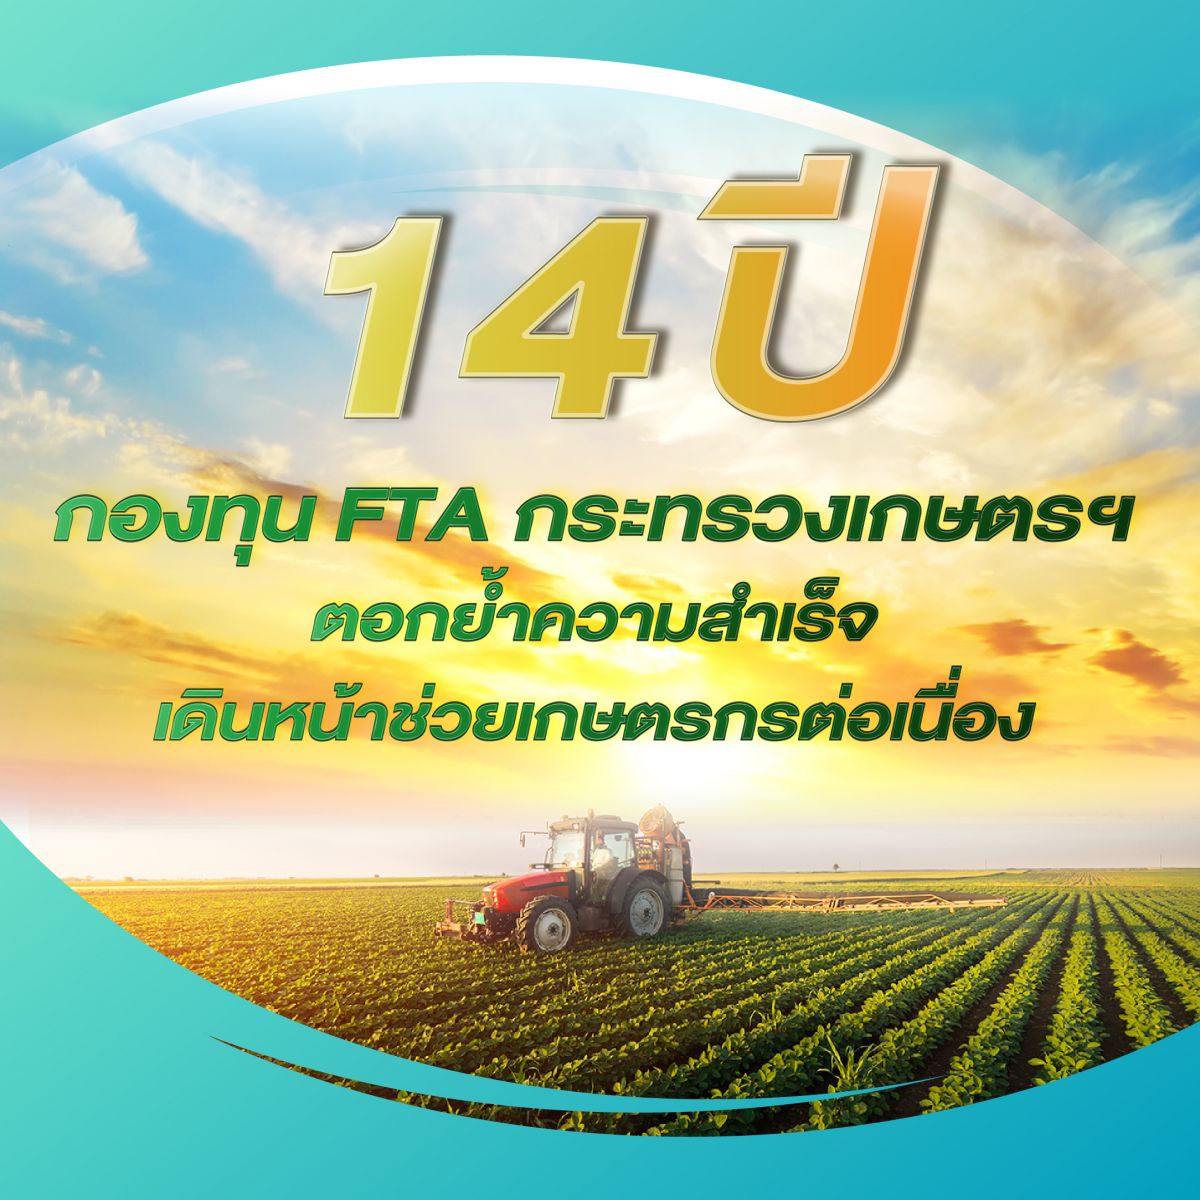 14 ปี กองทุน FTA กระทรวงเกษตรฯ ตอกย้ำความสำเร็จ เดินหน้าช่วยเกษตรกรต่อเนื่อง